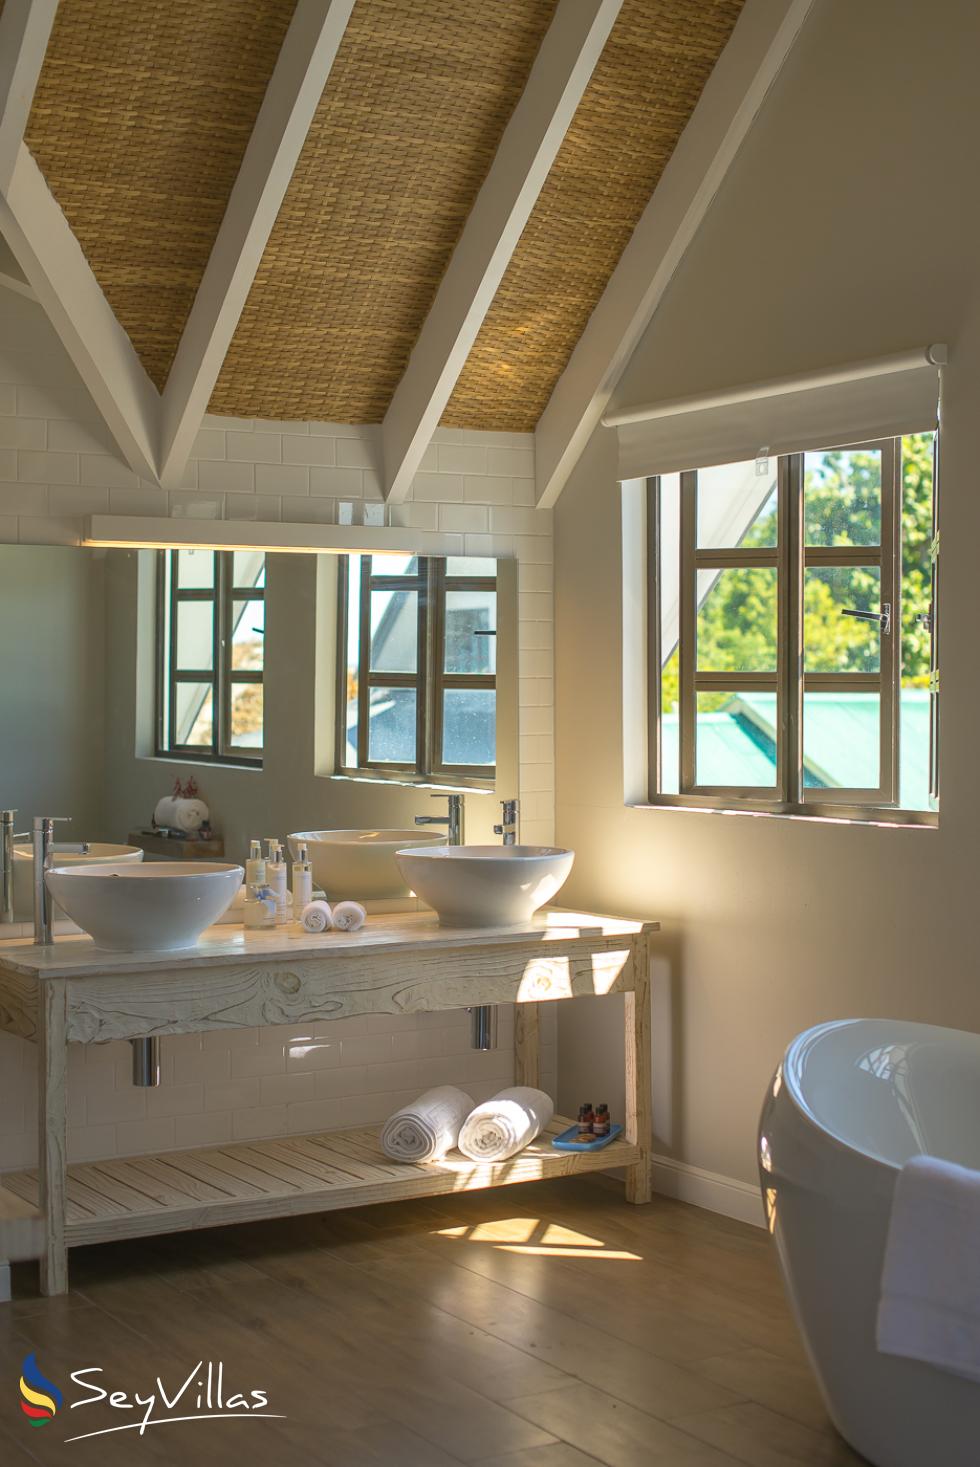 Foto 76: Le Nautique Luxury Waterfront Hotel - Deluxe-Meerblickzimmer mit Kingsize-Bett - La Digue (Seychellen)